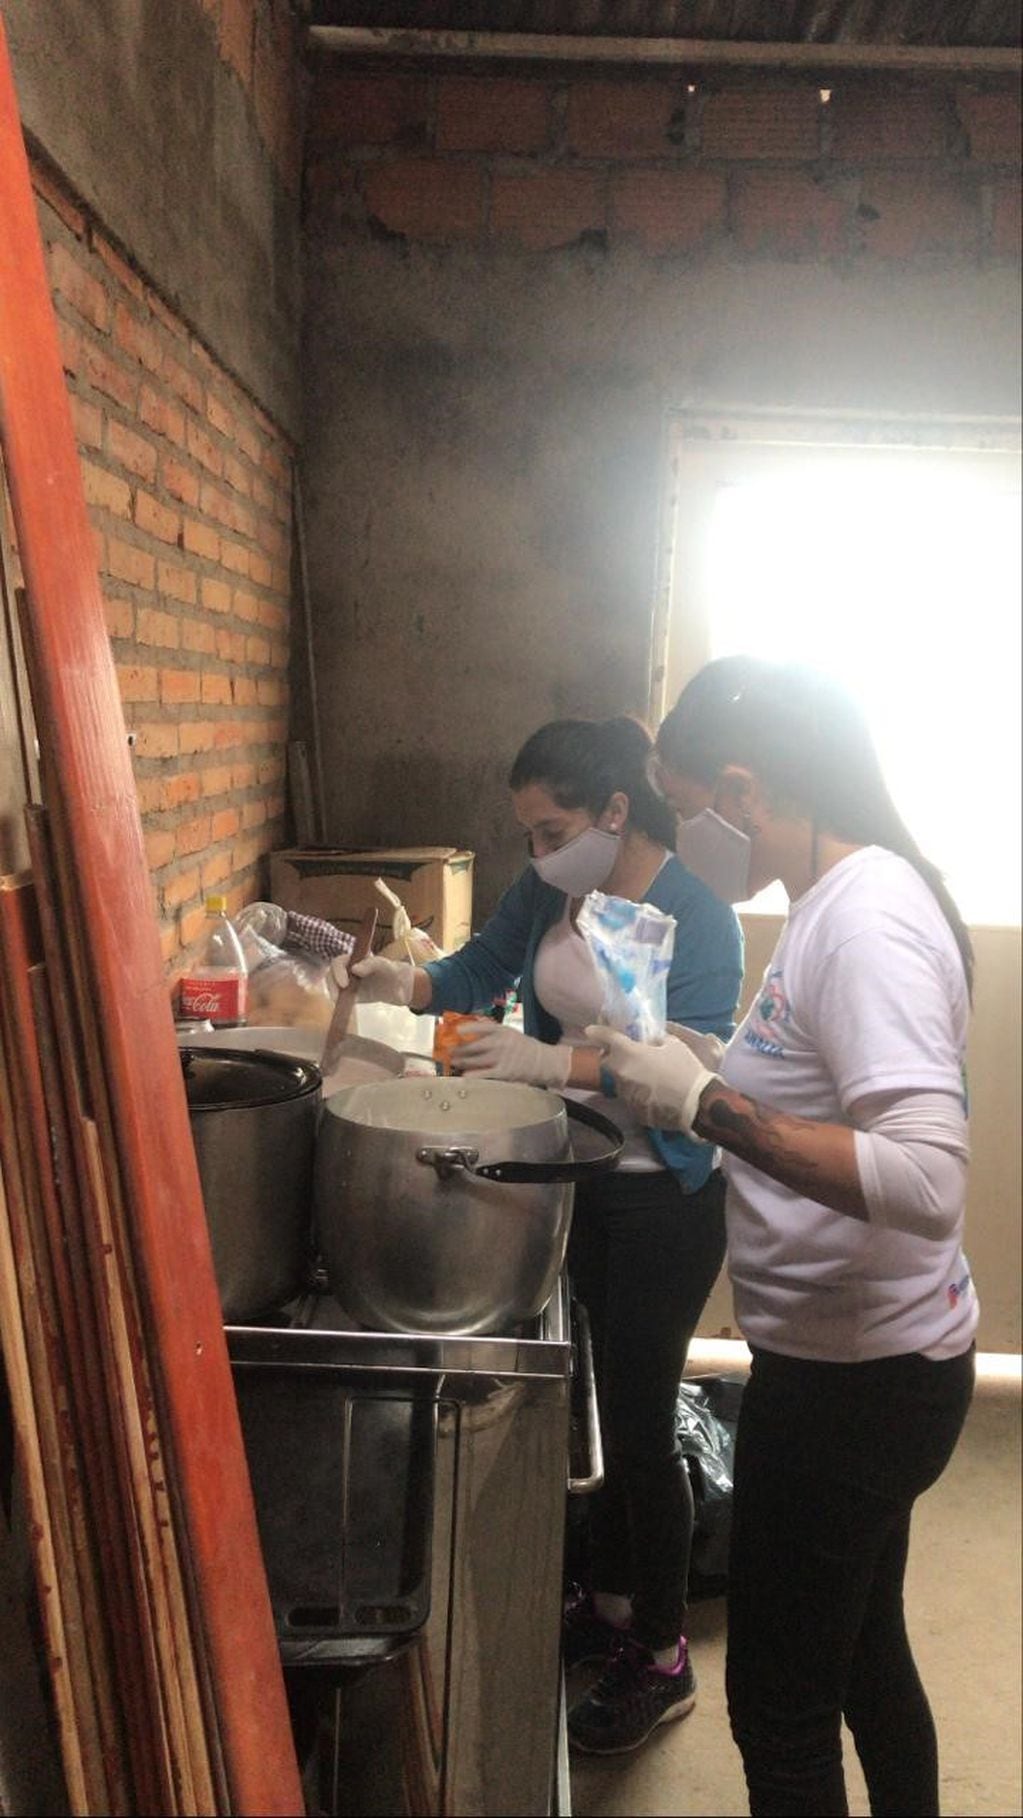 Los voluntarios de la fundación "Un mundo diferente" siguen trabajando durante la pandemia.